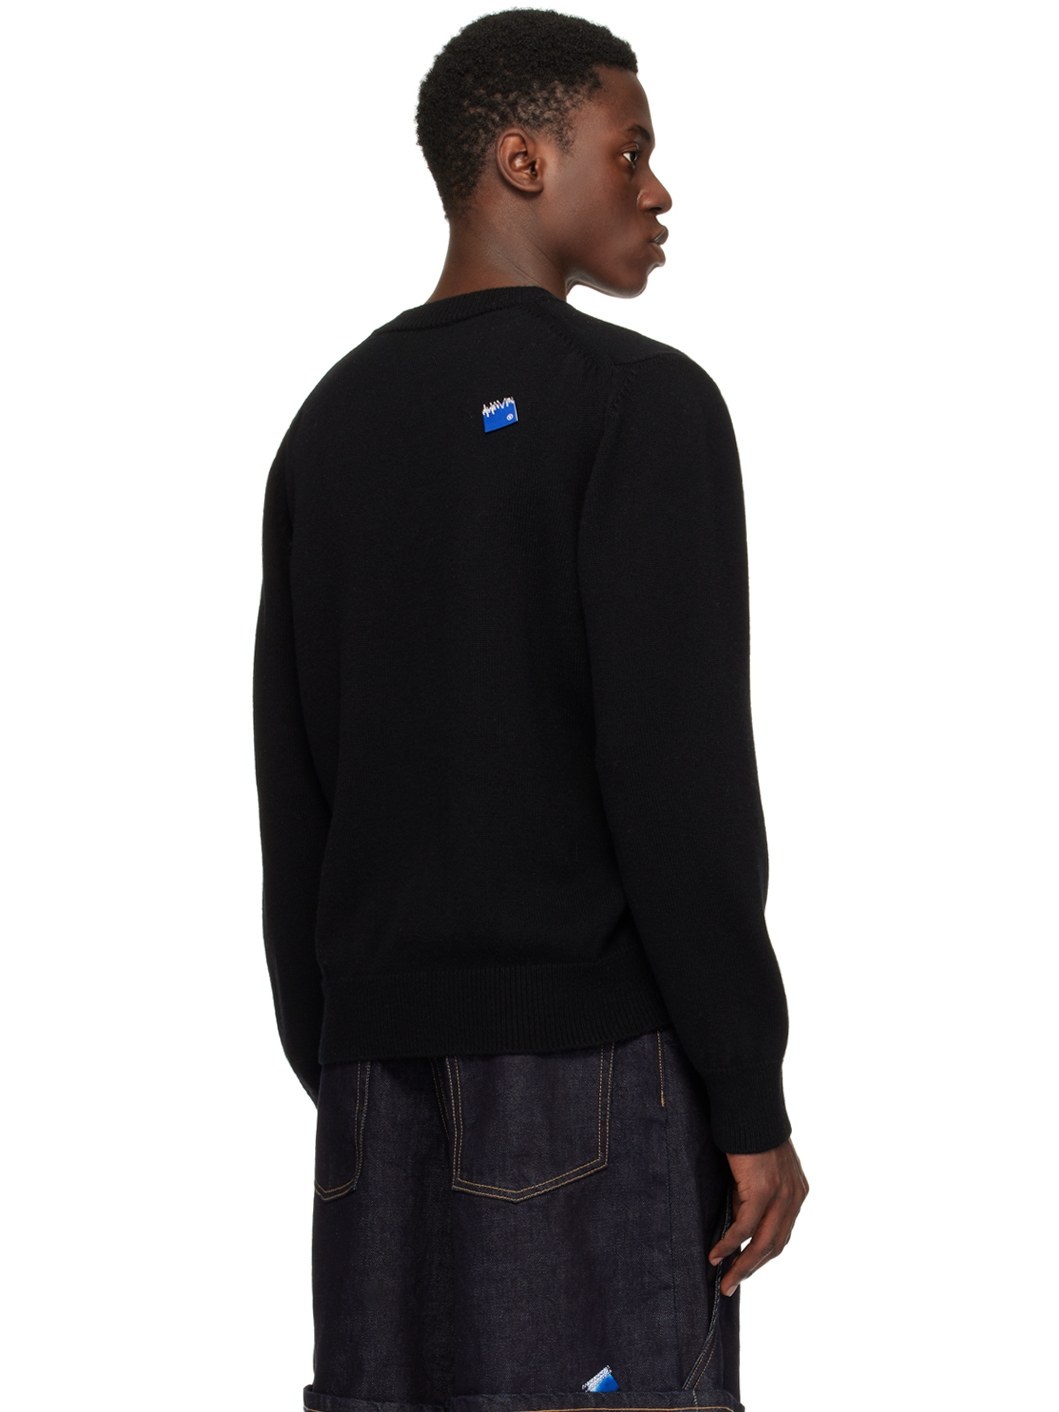 Black Dropped Shoulder Sweater - 3